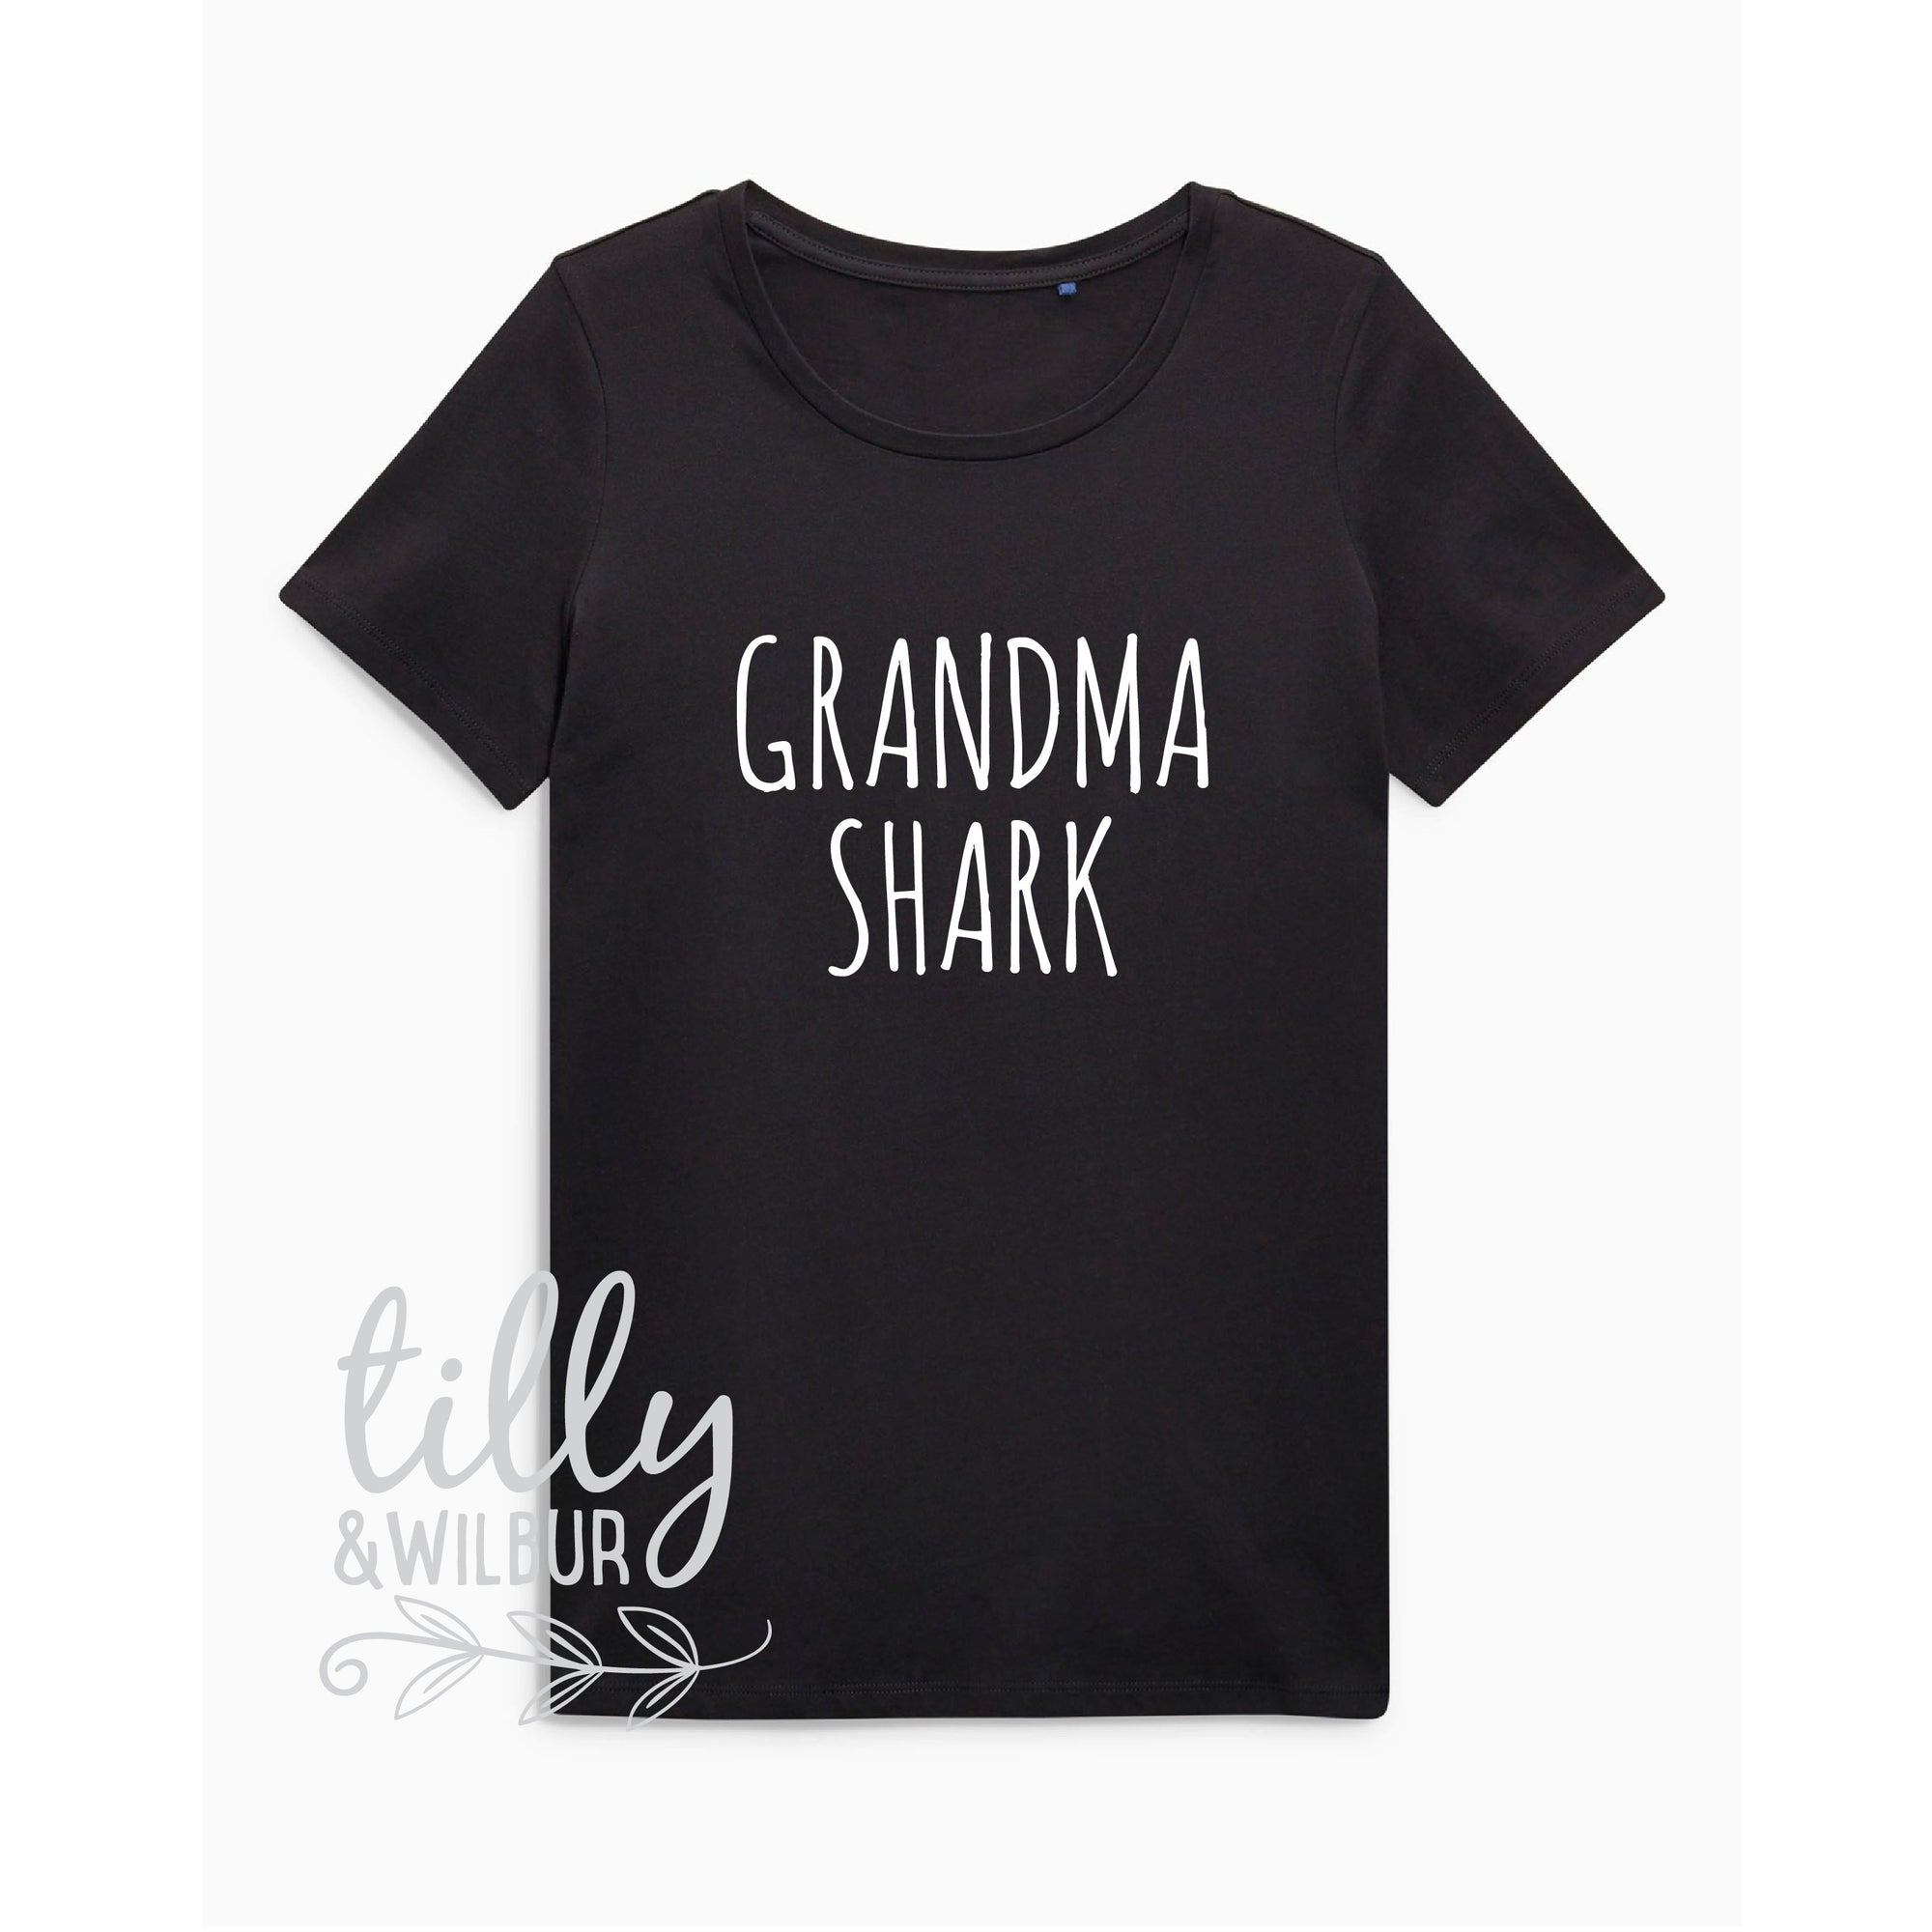 Grandma Shark Doo Doo Doo Doo Doo Doo, Baby Shark Doo Doo Doo, Matching Shirts, Matching Grandma Shirts, Matching Shark Family T-Shirts